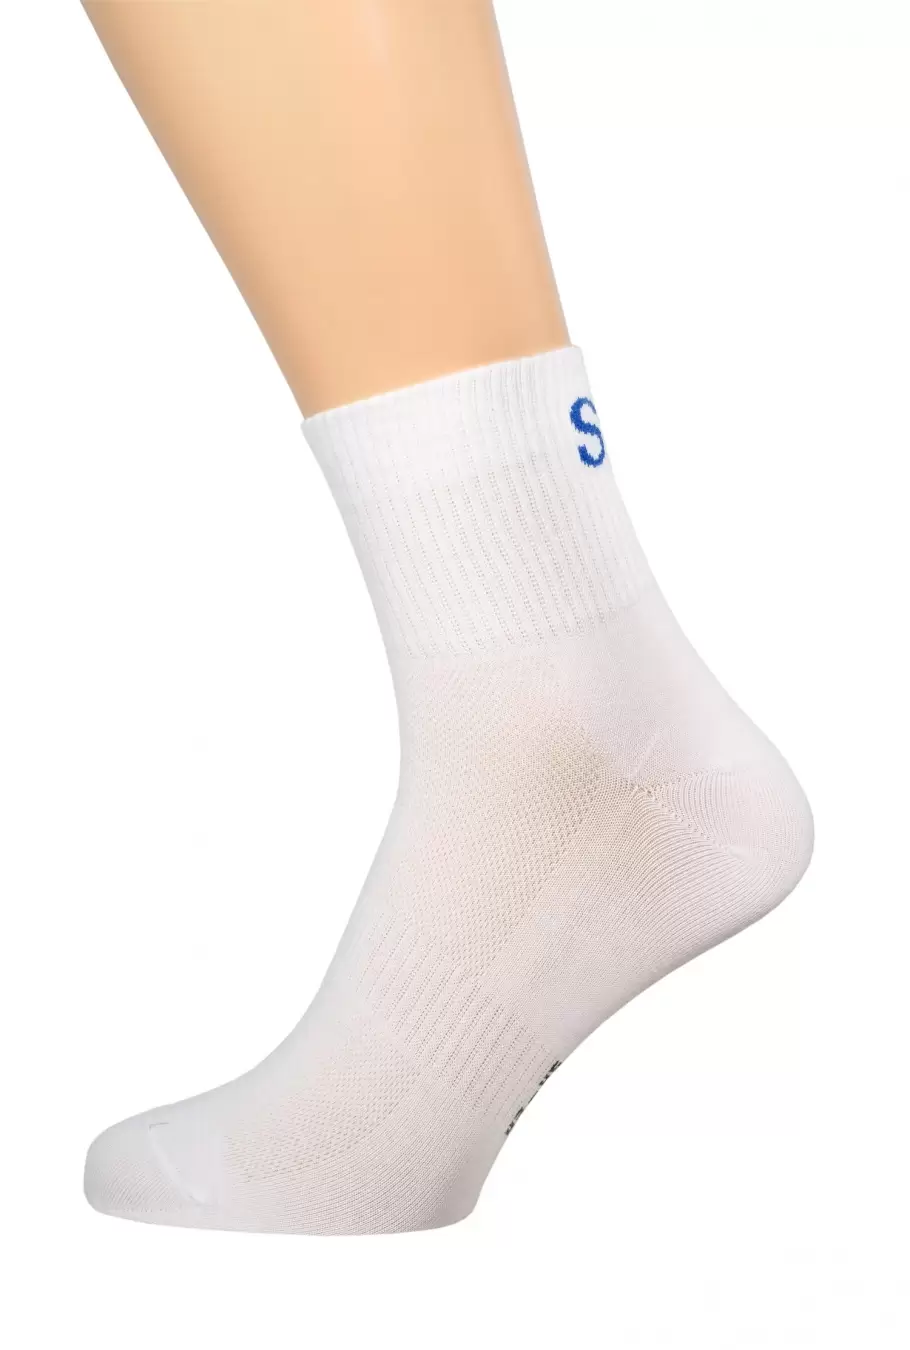 Pingons 7В52, мужские спортивные носки (изображение 1)